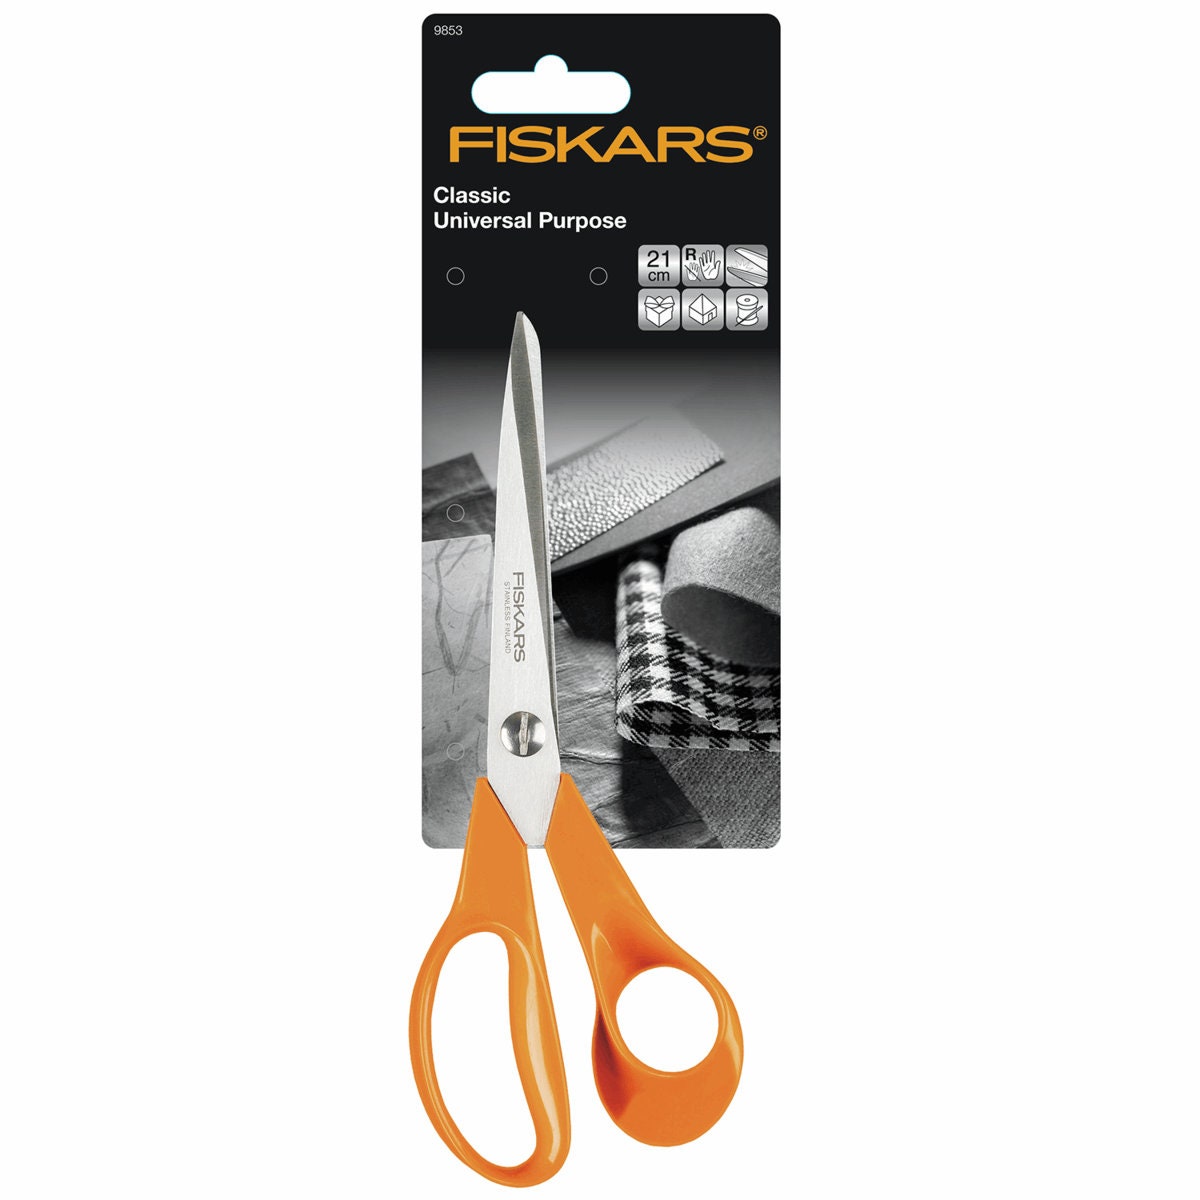 Fiskars Scissors 9853